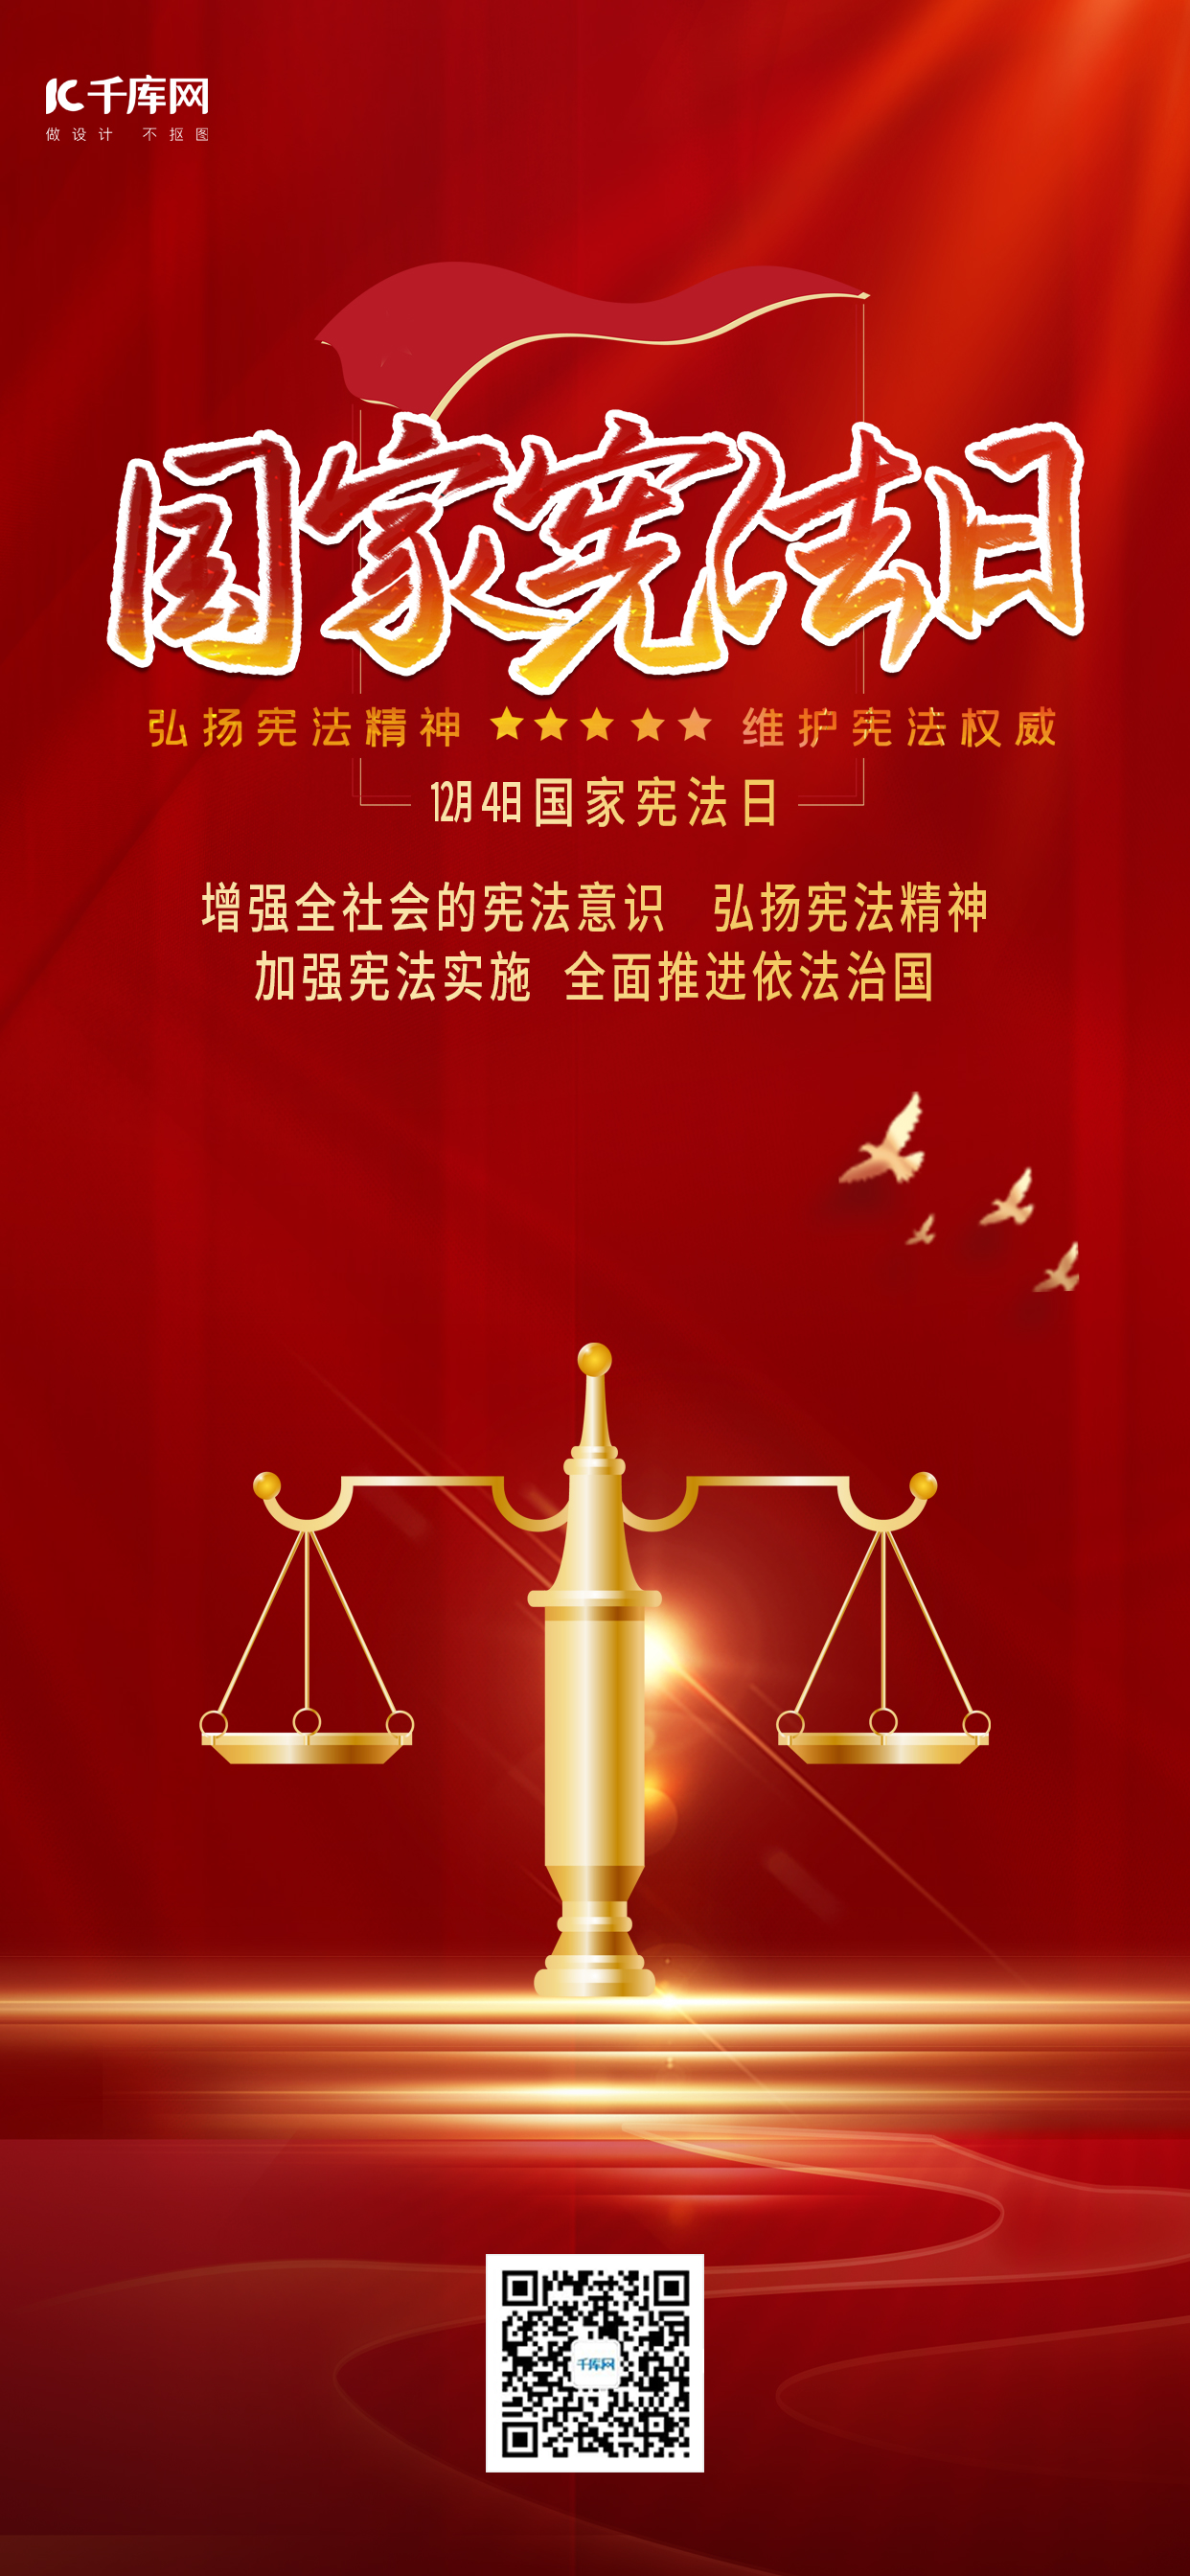 国家宪法日天平红色简约海报图片